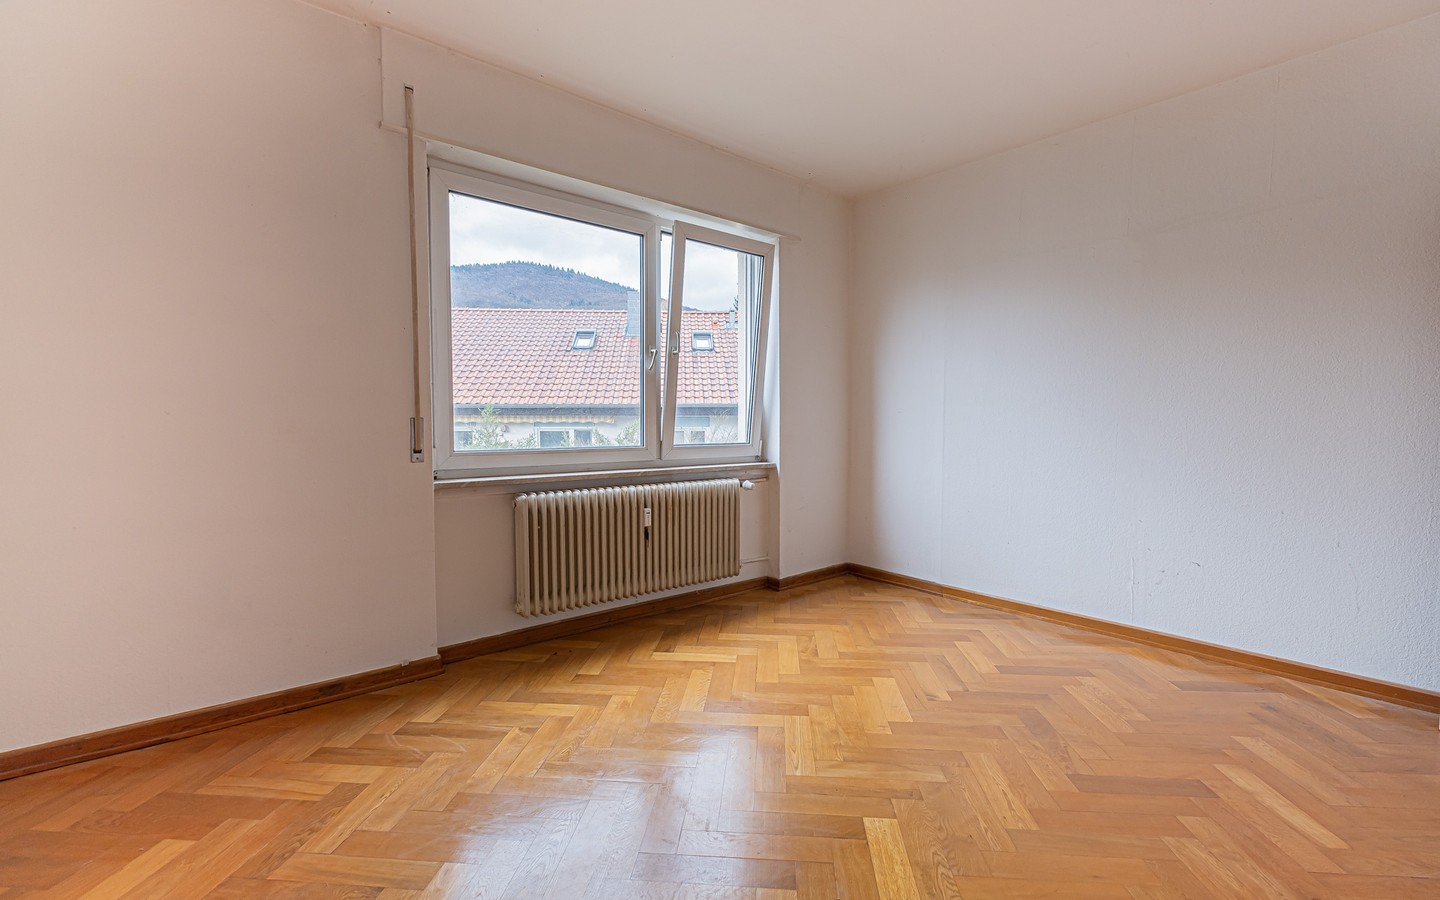 Schlafzimmer - HD-Handschuhsheim: Renovierungsbedürftige Wohnung mit viel Potenzial